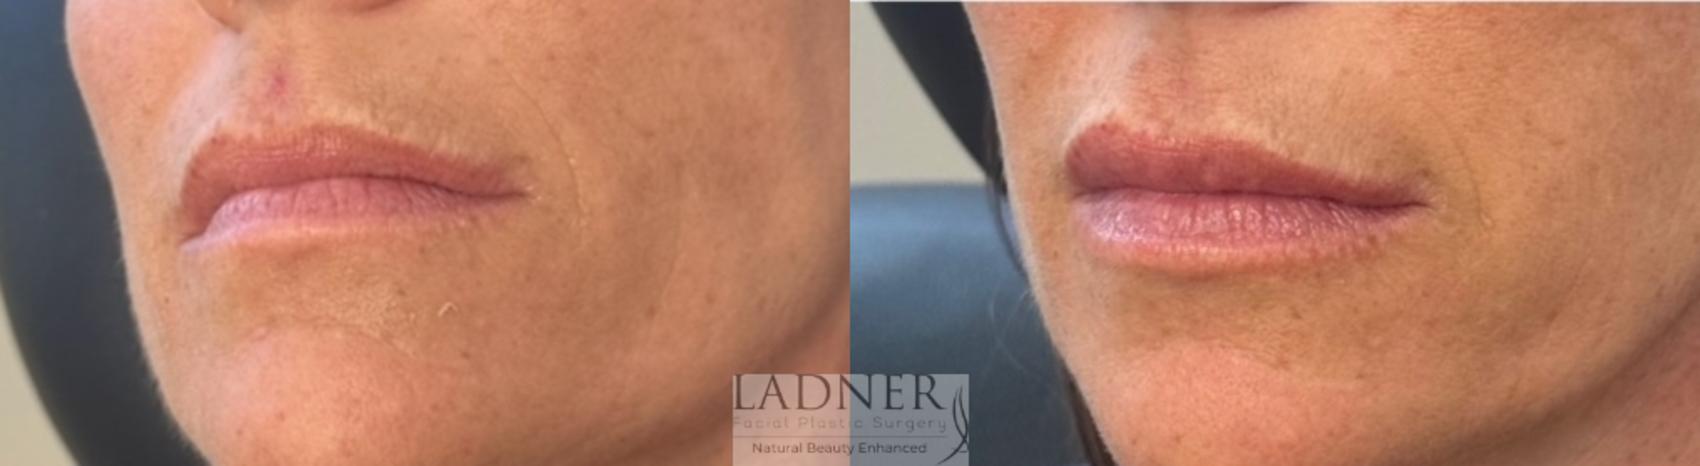 Dermal Fillers Case 203 Before & After Front | Denver, CO | Ladner Facial Plastic Surgery